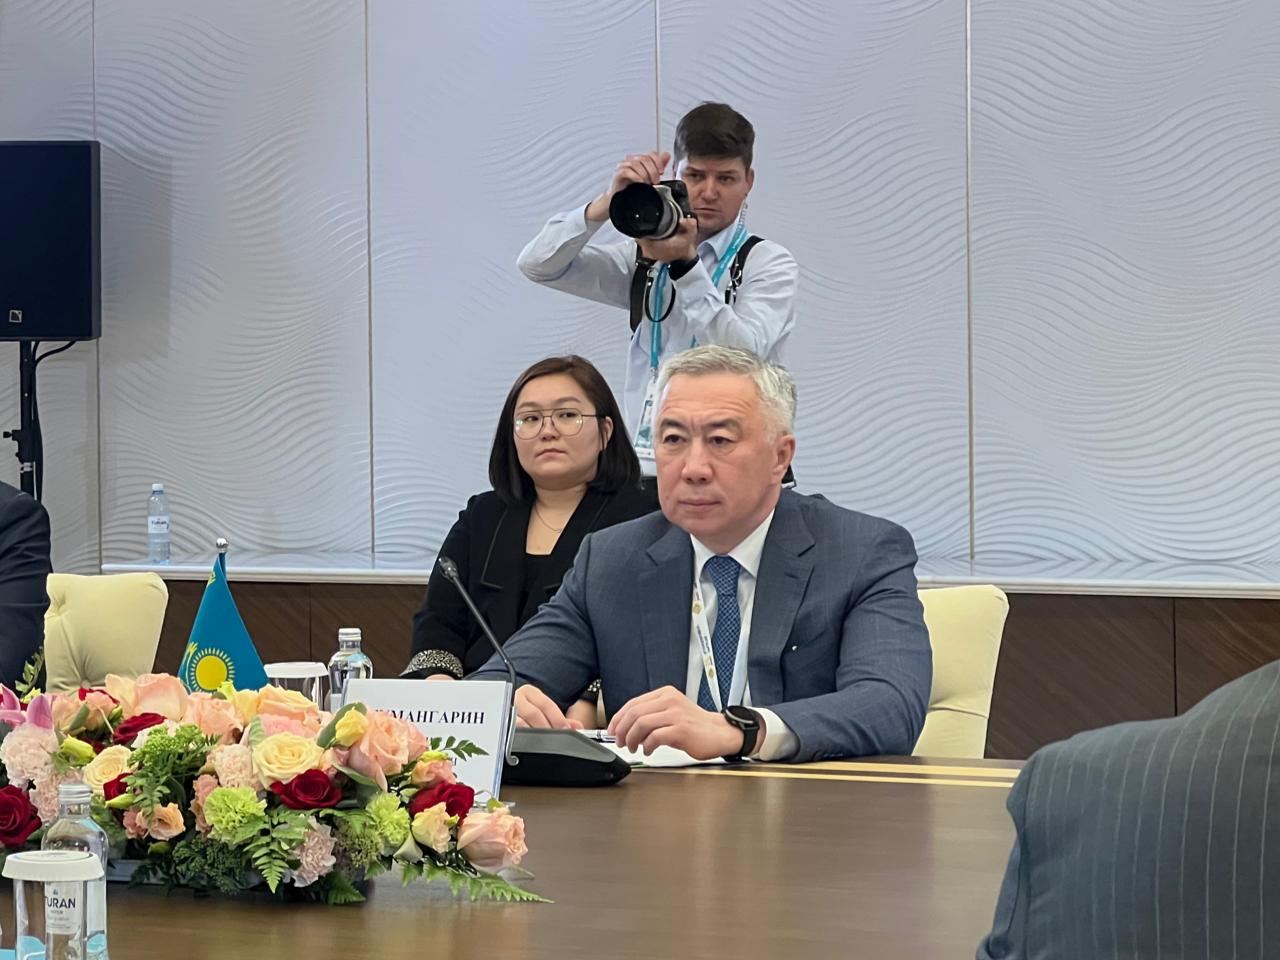 Товарооборот между Азербайджаном и Казахстаном вырос на $50 млн - министр